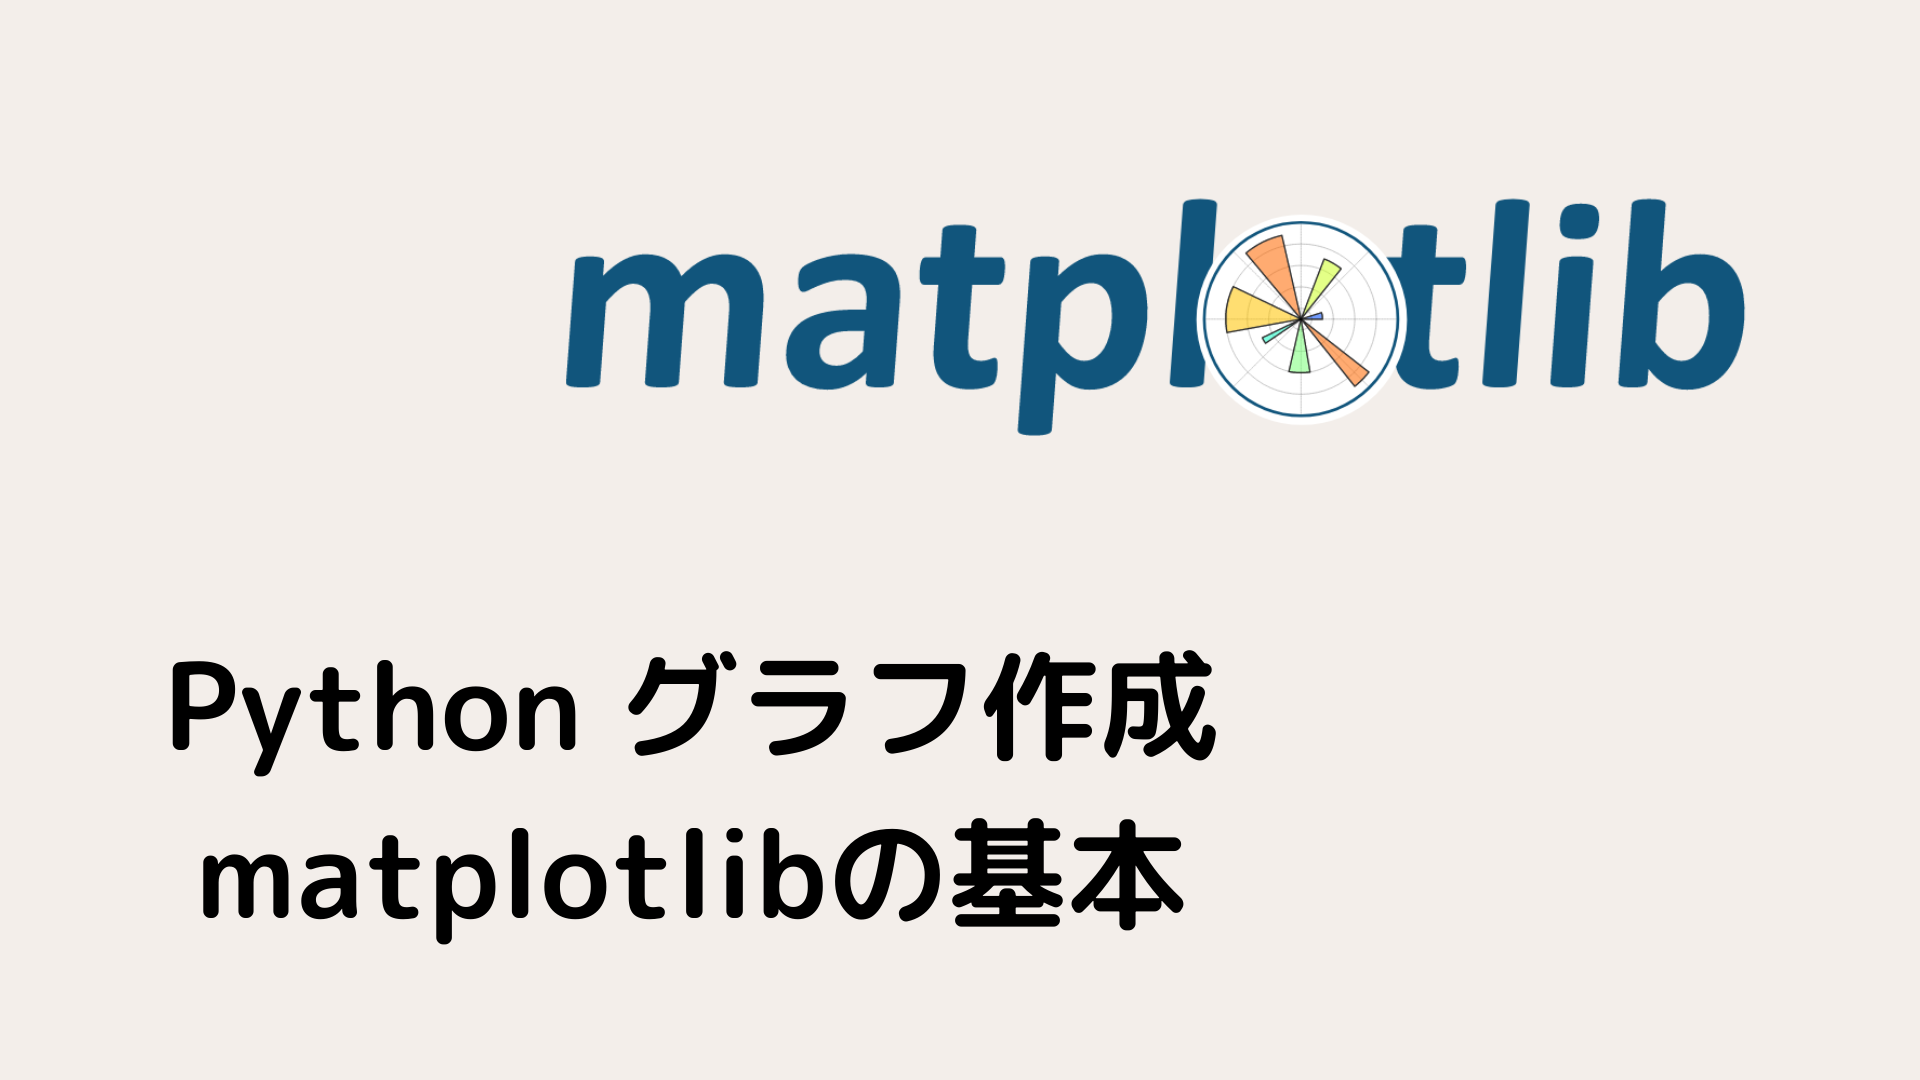 15分 Pythonでグラフを作成する方法 Matplotlibの基本をマスター 努力のガリレオ